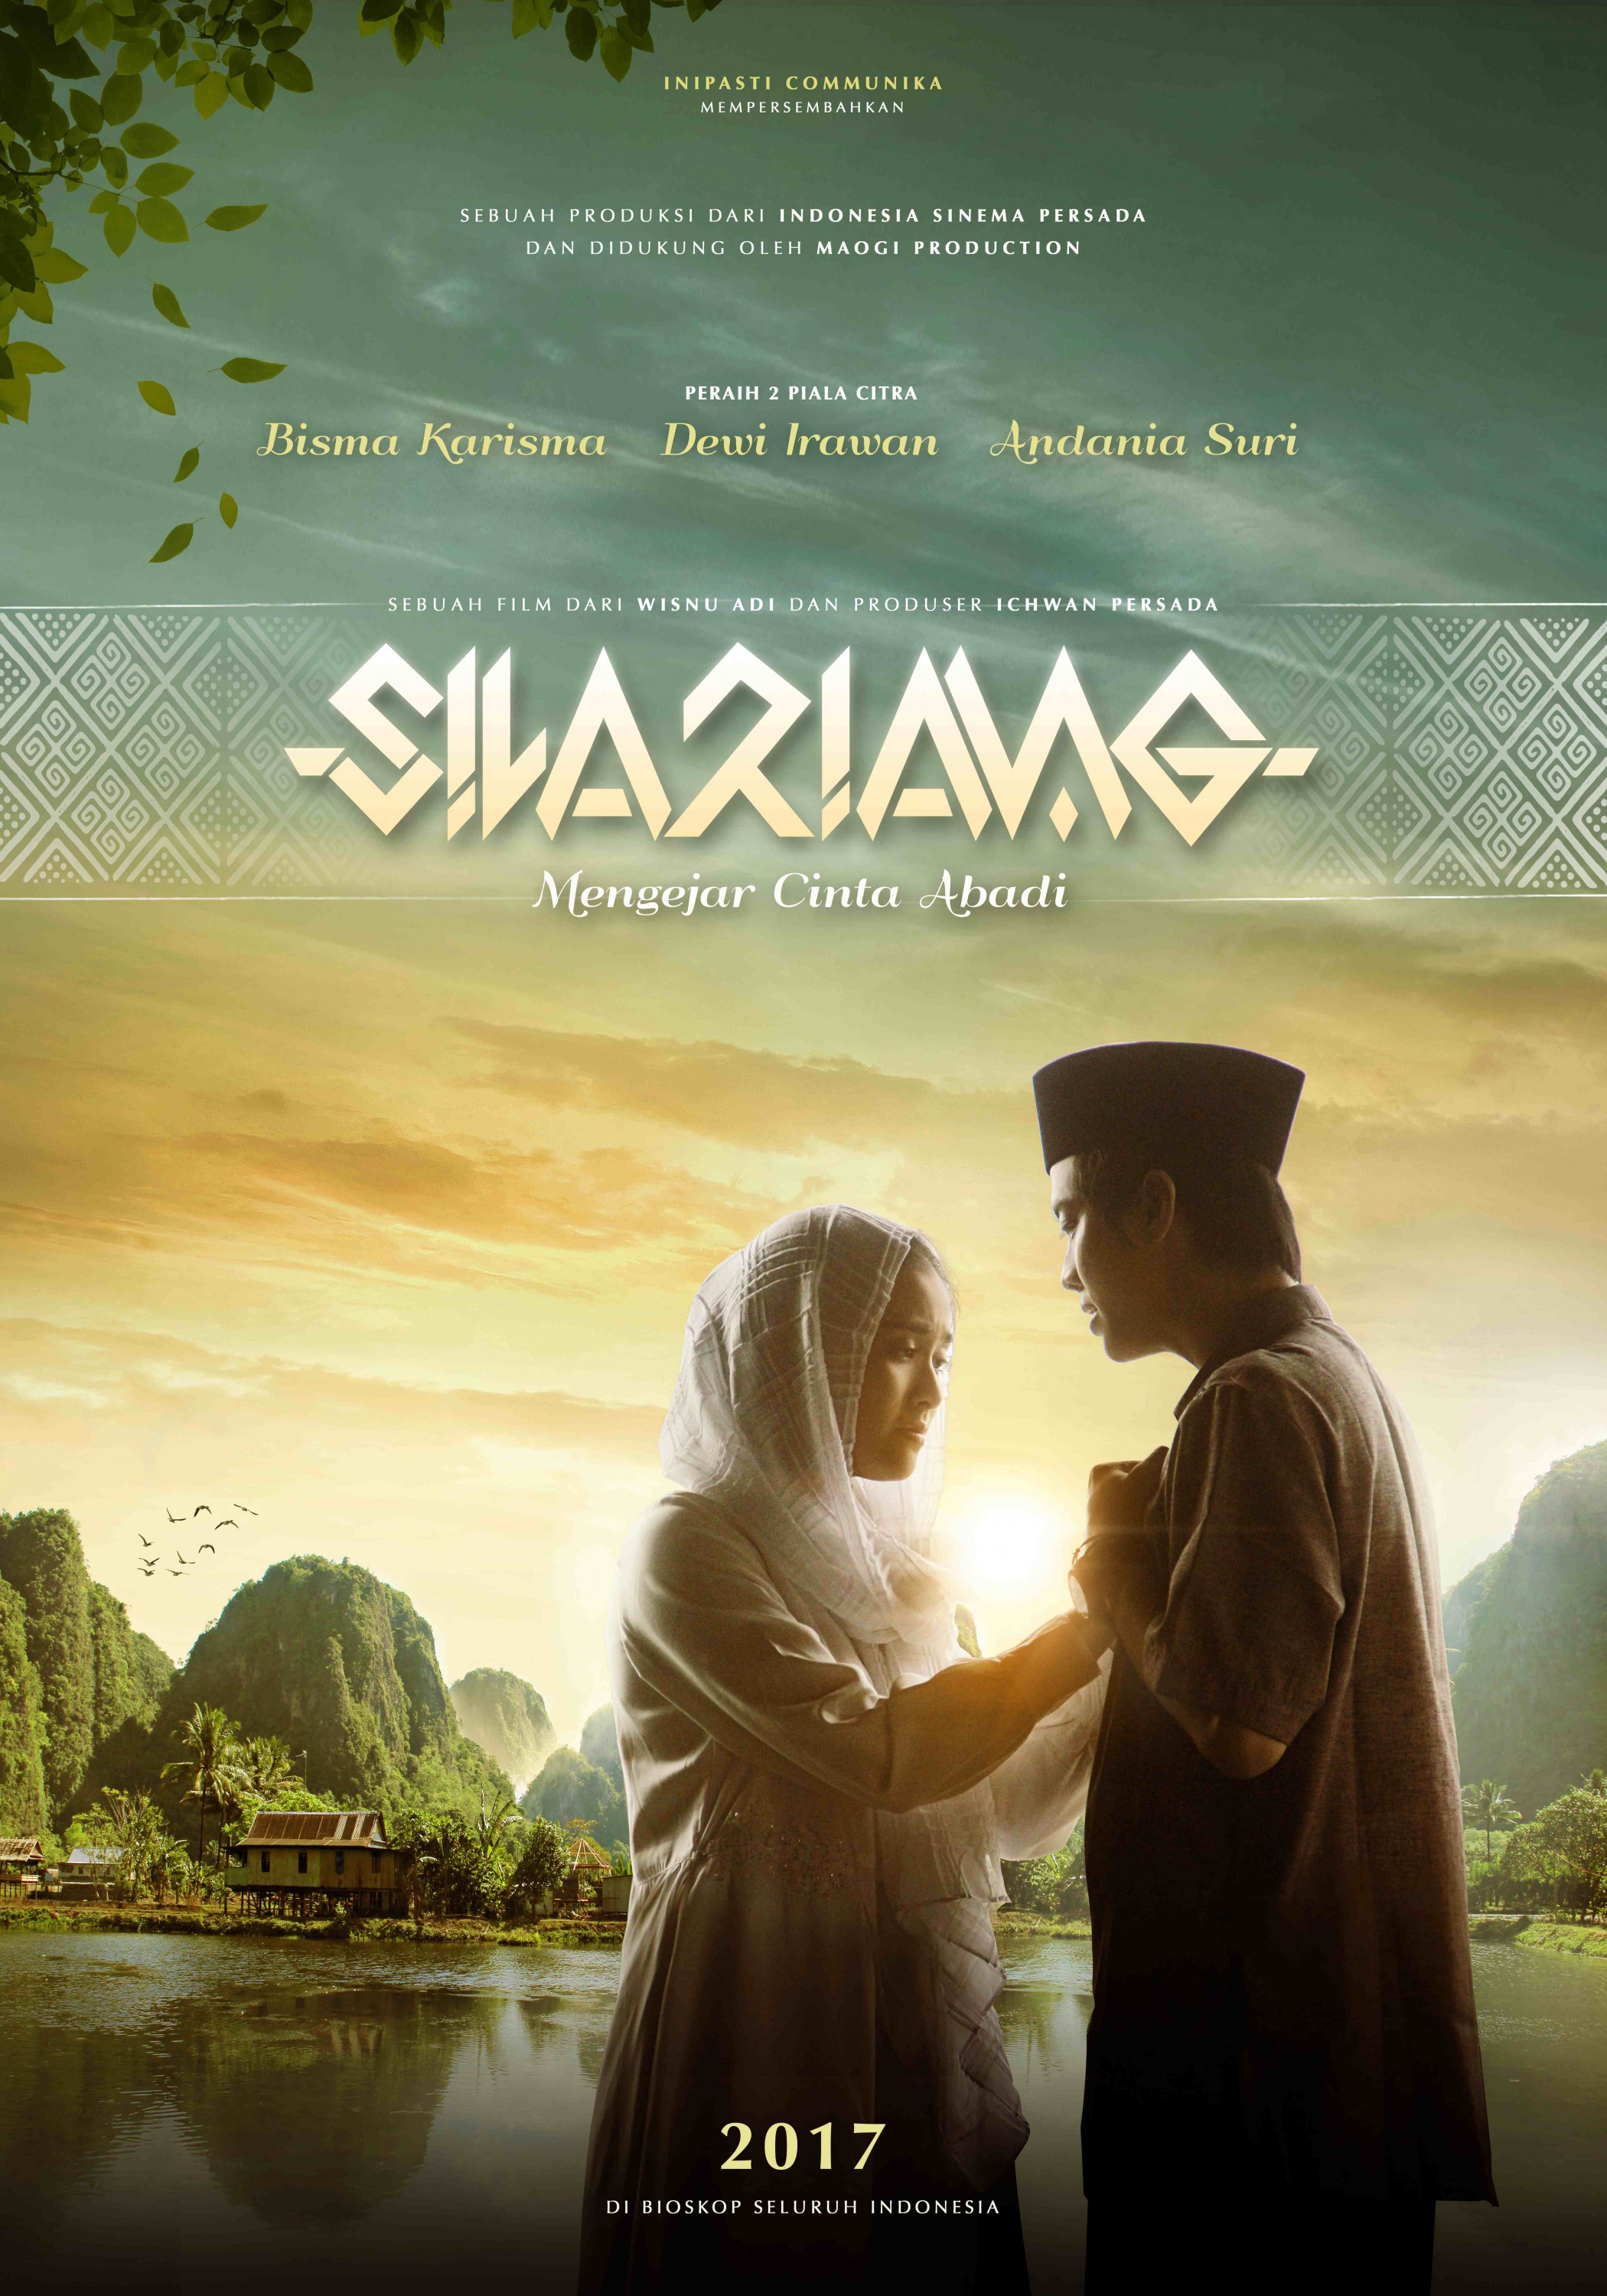 Mega Sized Movie Poster Image for Silariang: Mengejar Cinta Abadi 